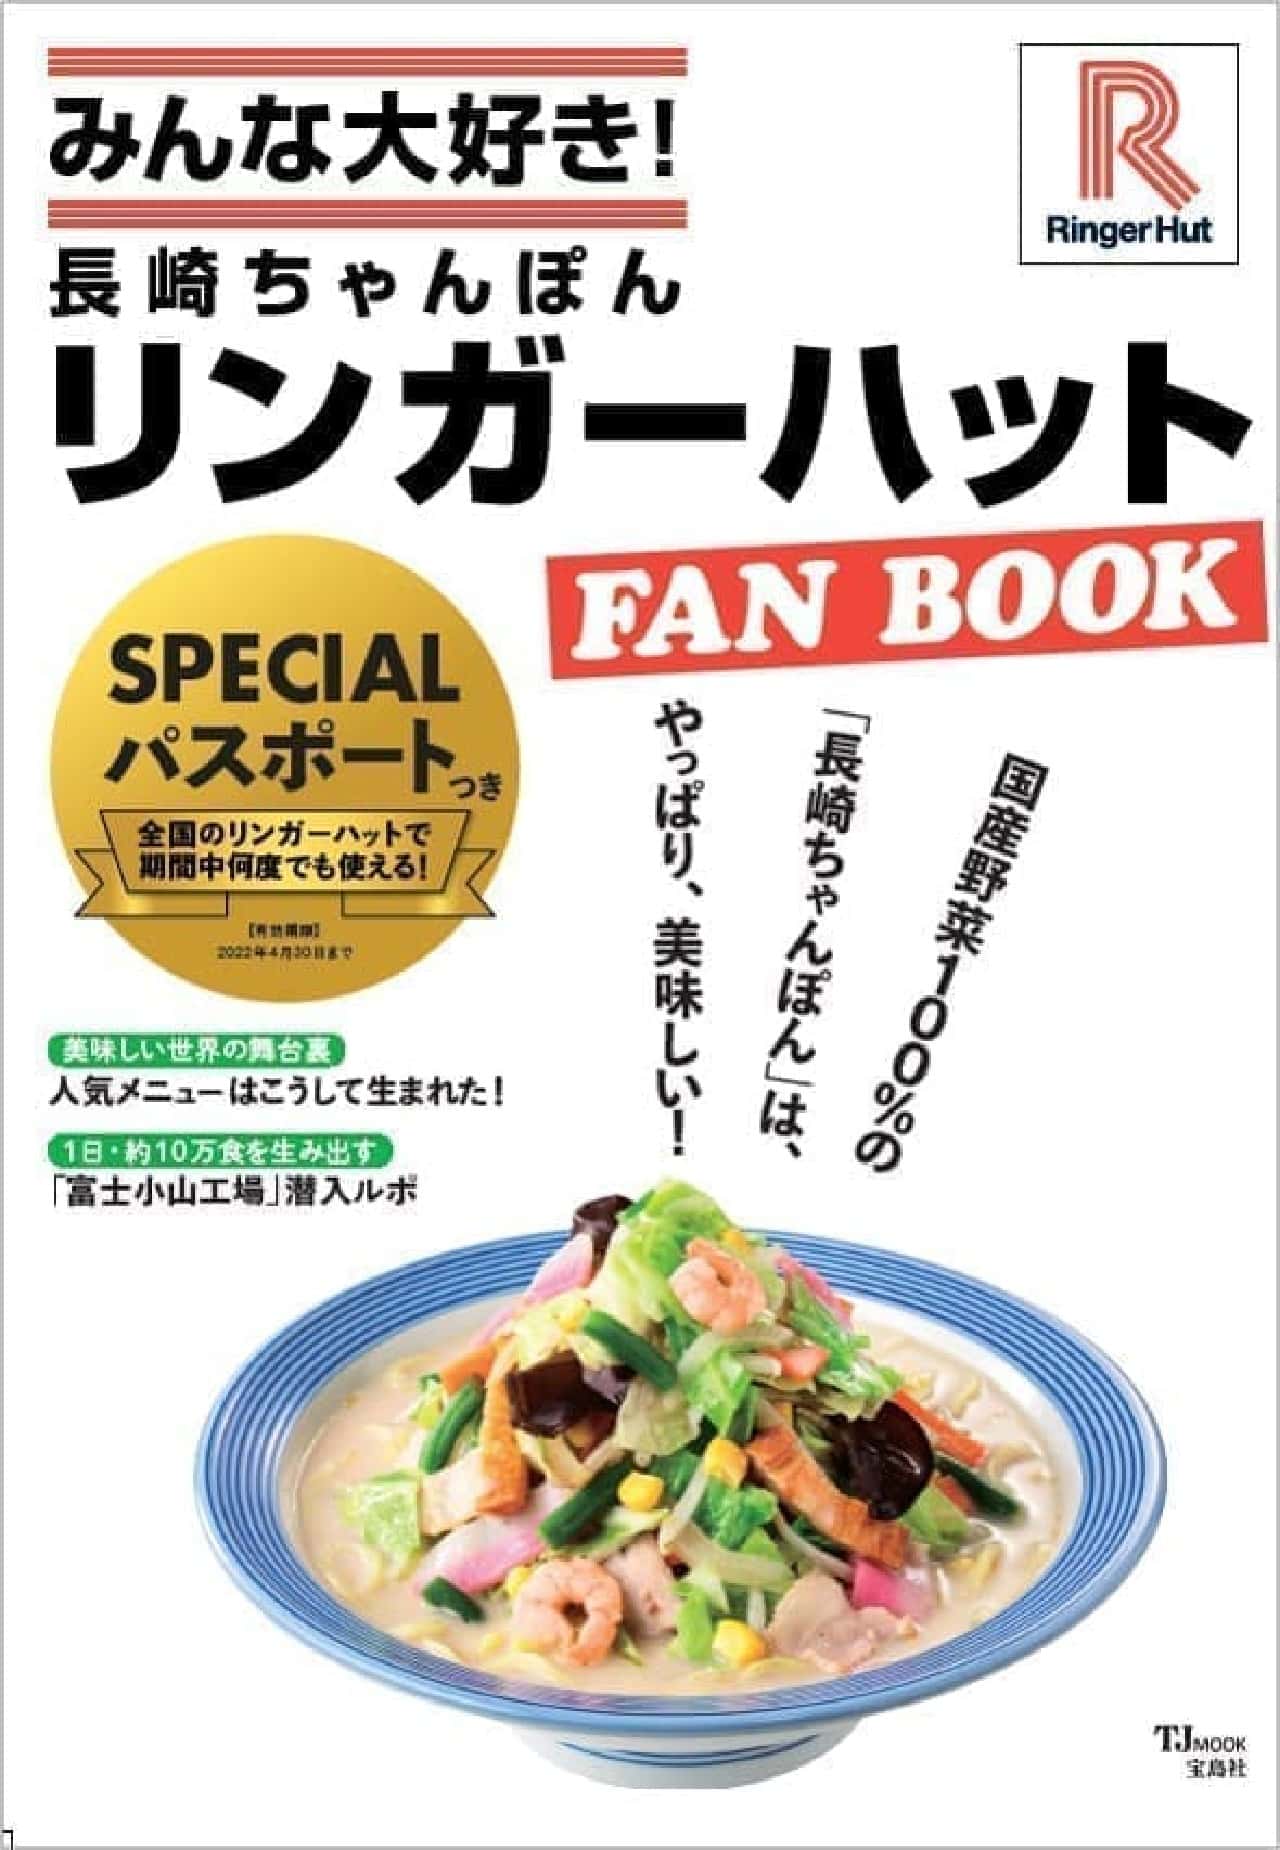 リンガーハット 初のファンブック みんな大好き 長崎ちゃんぽん リンガーハット Fan Book クーポン付き マニアおすすめの食べ方など紹介 えん食べ